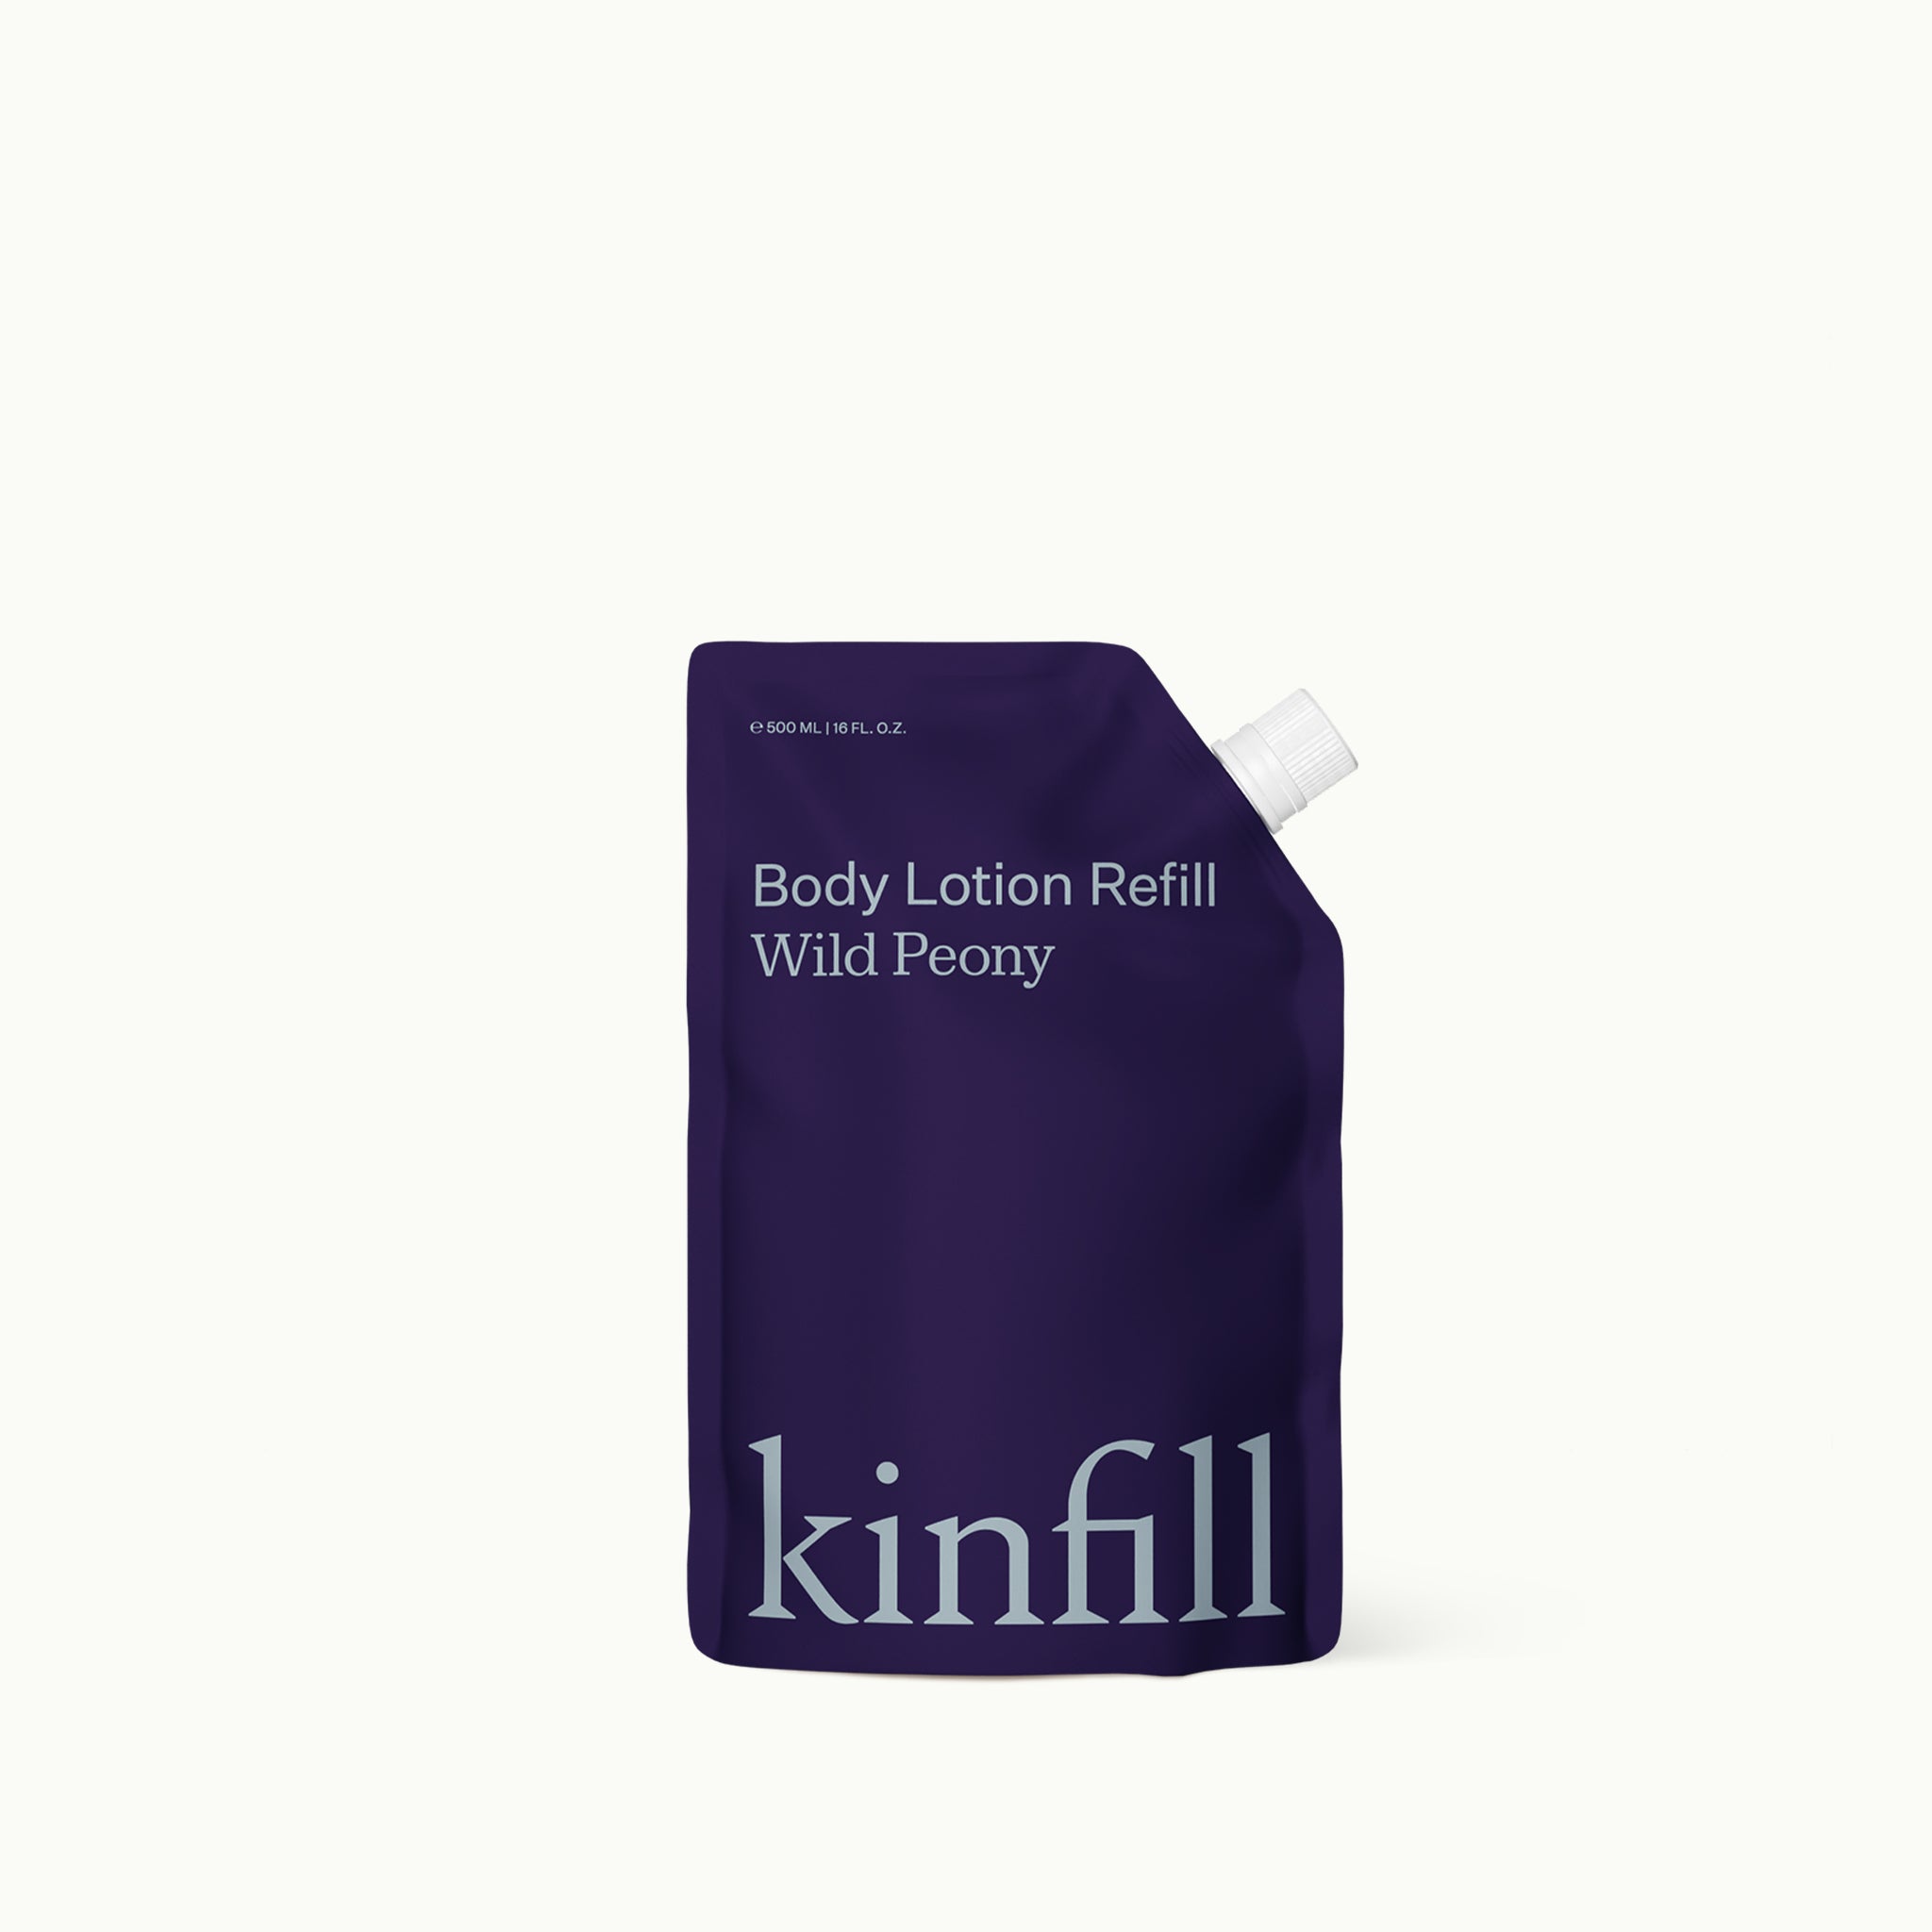 Body Lotion Refill • Wild Peony